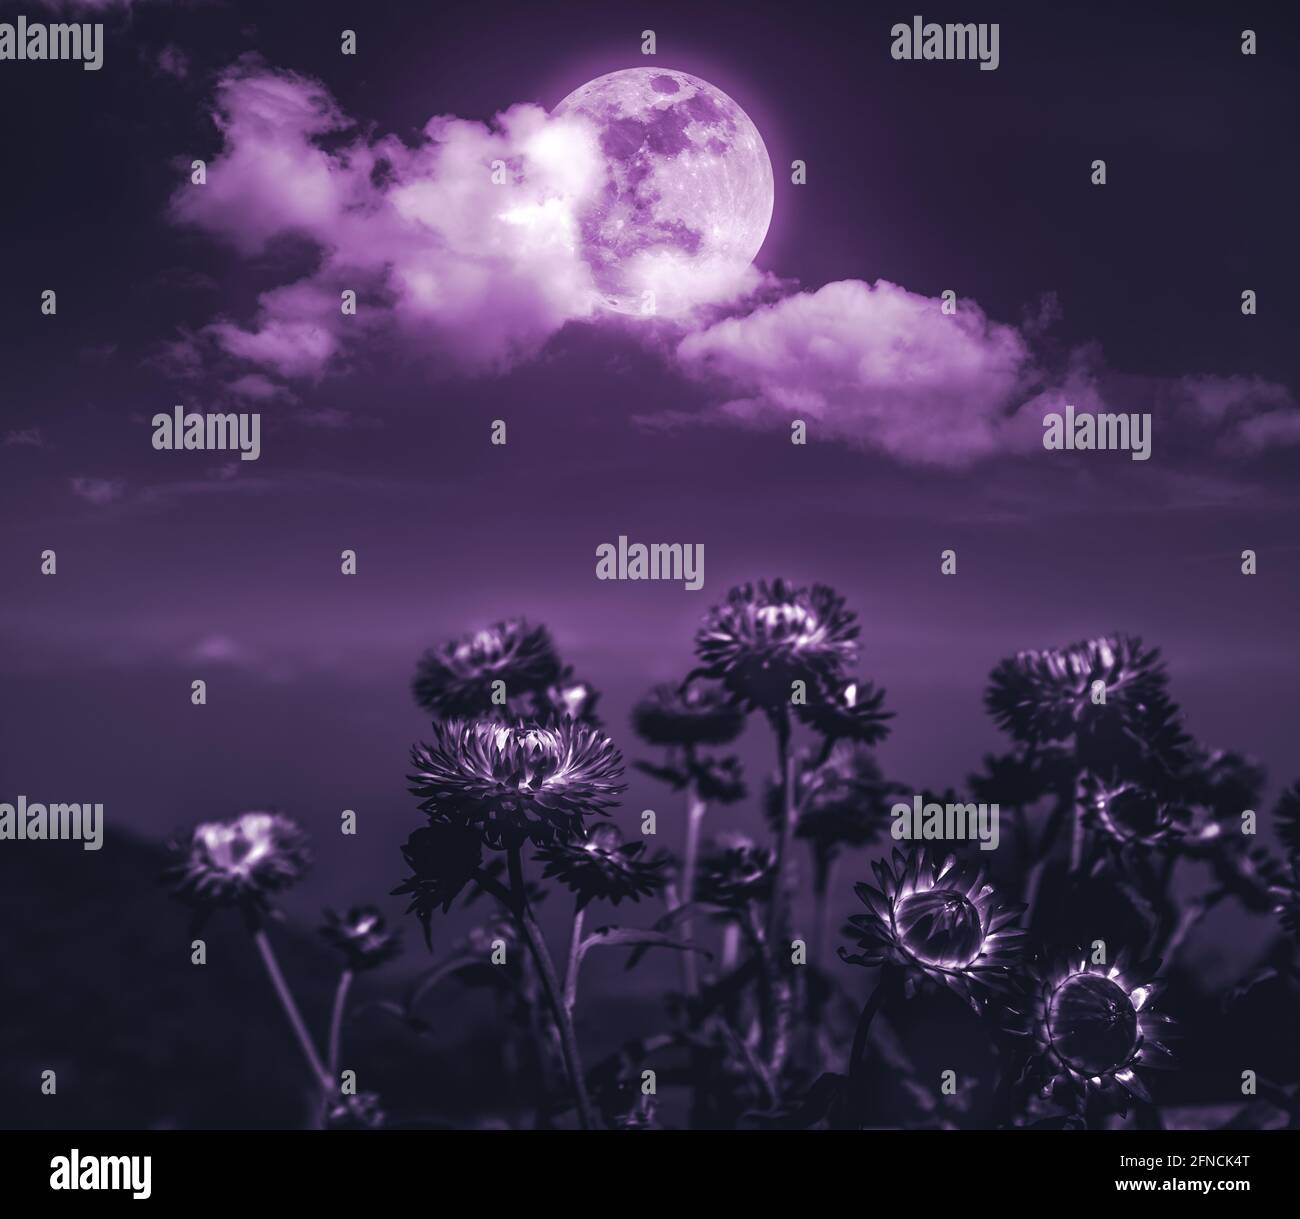 Belle photo de paysage nuageux la nuit. Paysage nocturne de ciel violet foncé avec pleine lune derrière les nuages au-dessus de fleurs de paille sèches. Sérénité nature Banque D'Images